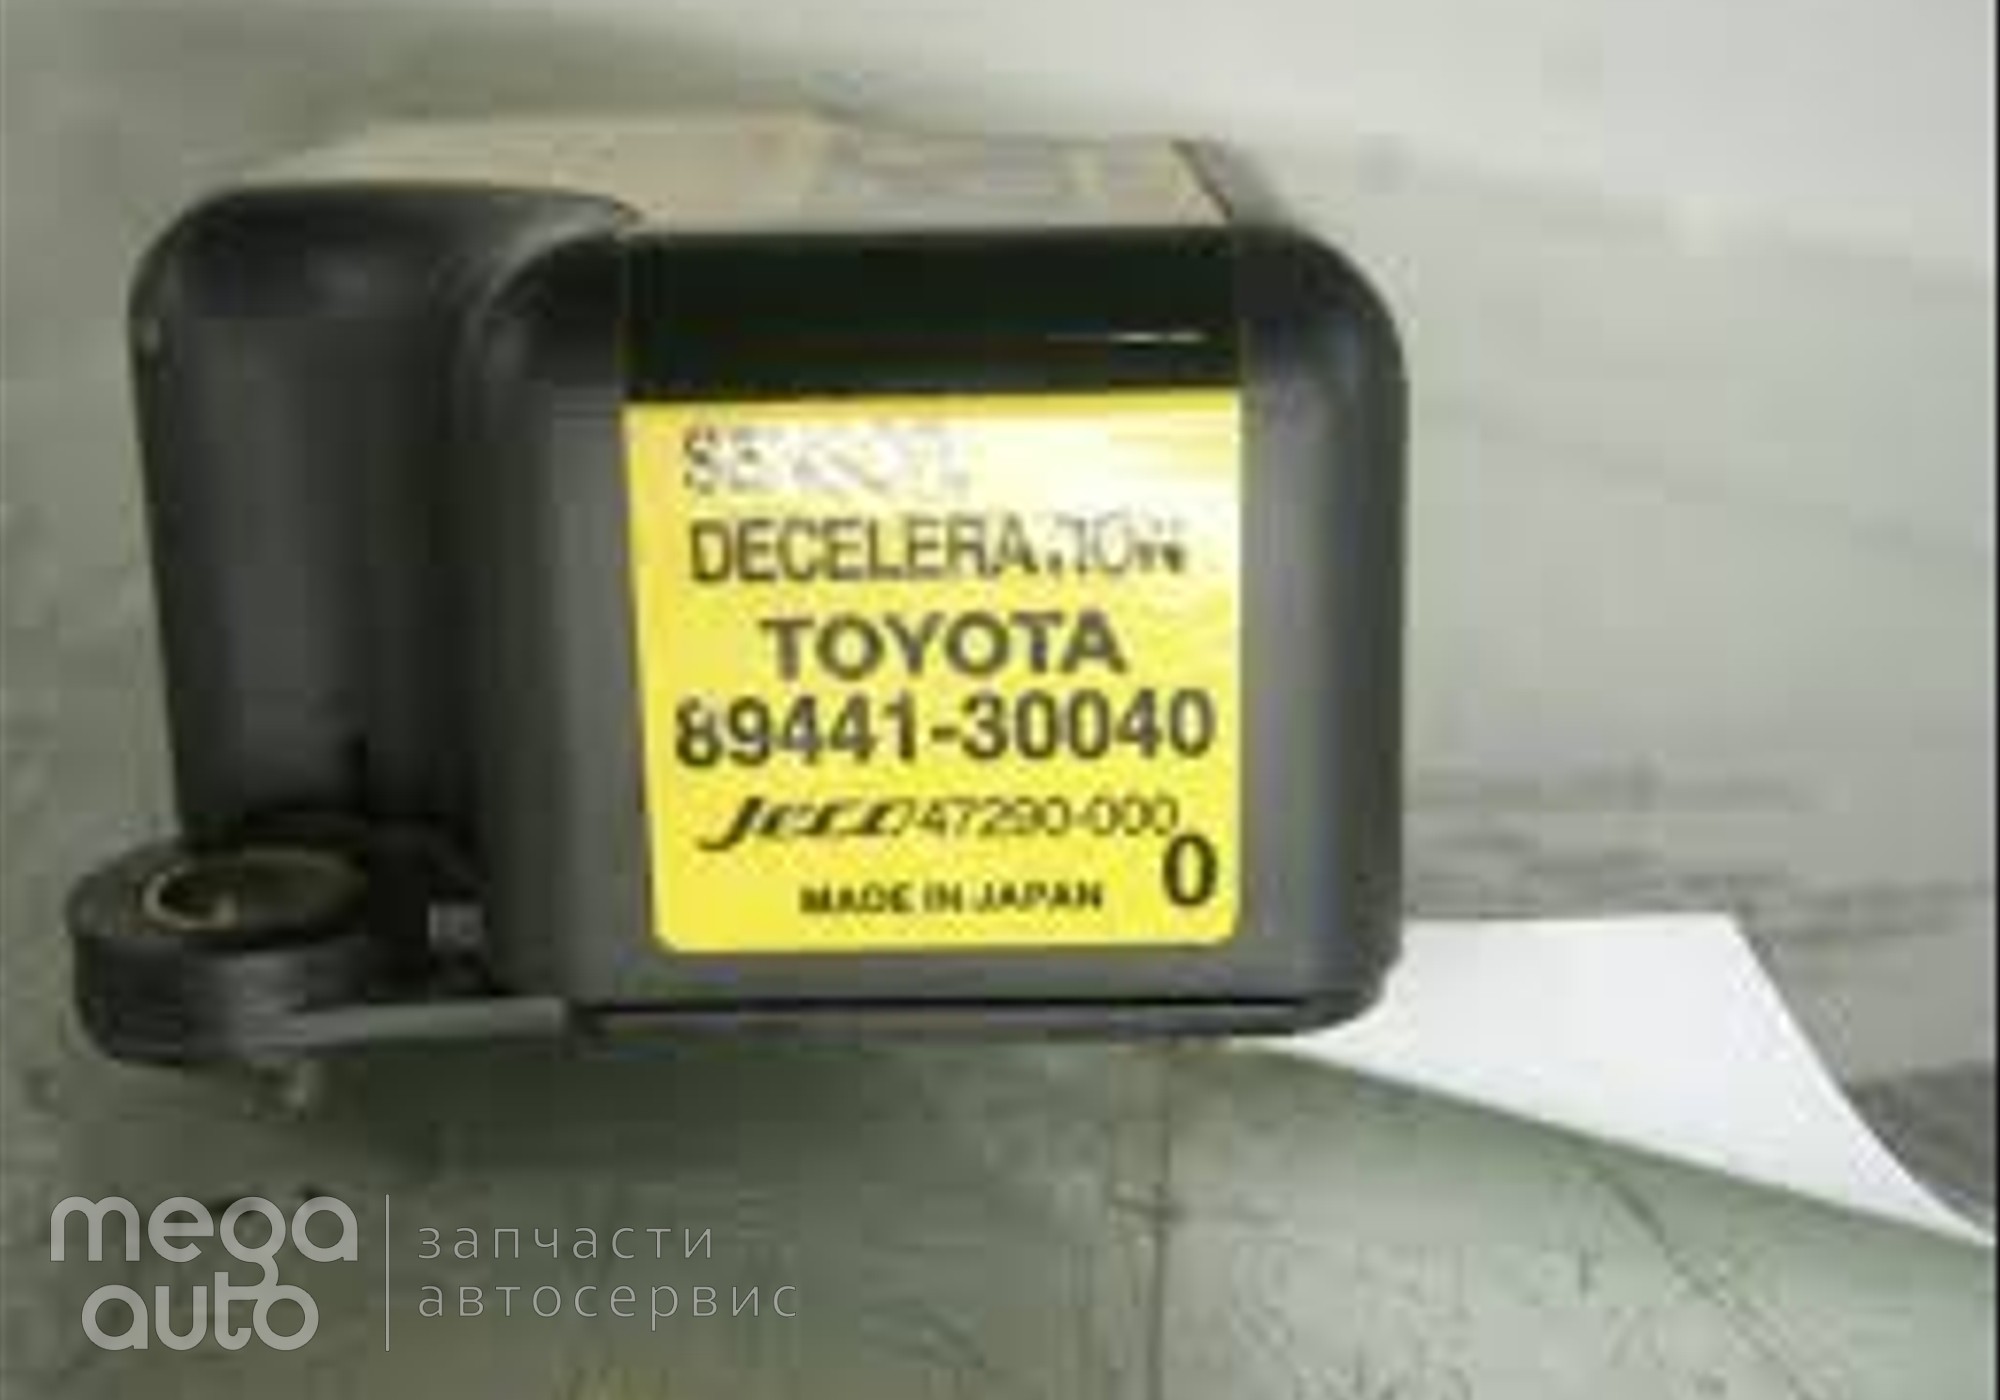 8944130040 Датчик ускорения тойота для Toyota